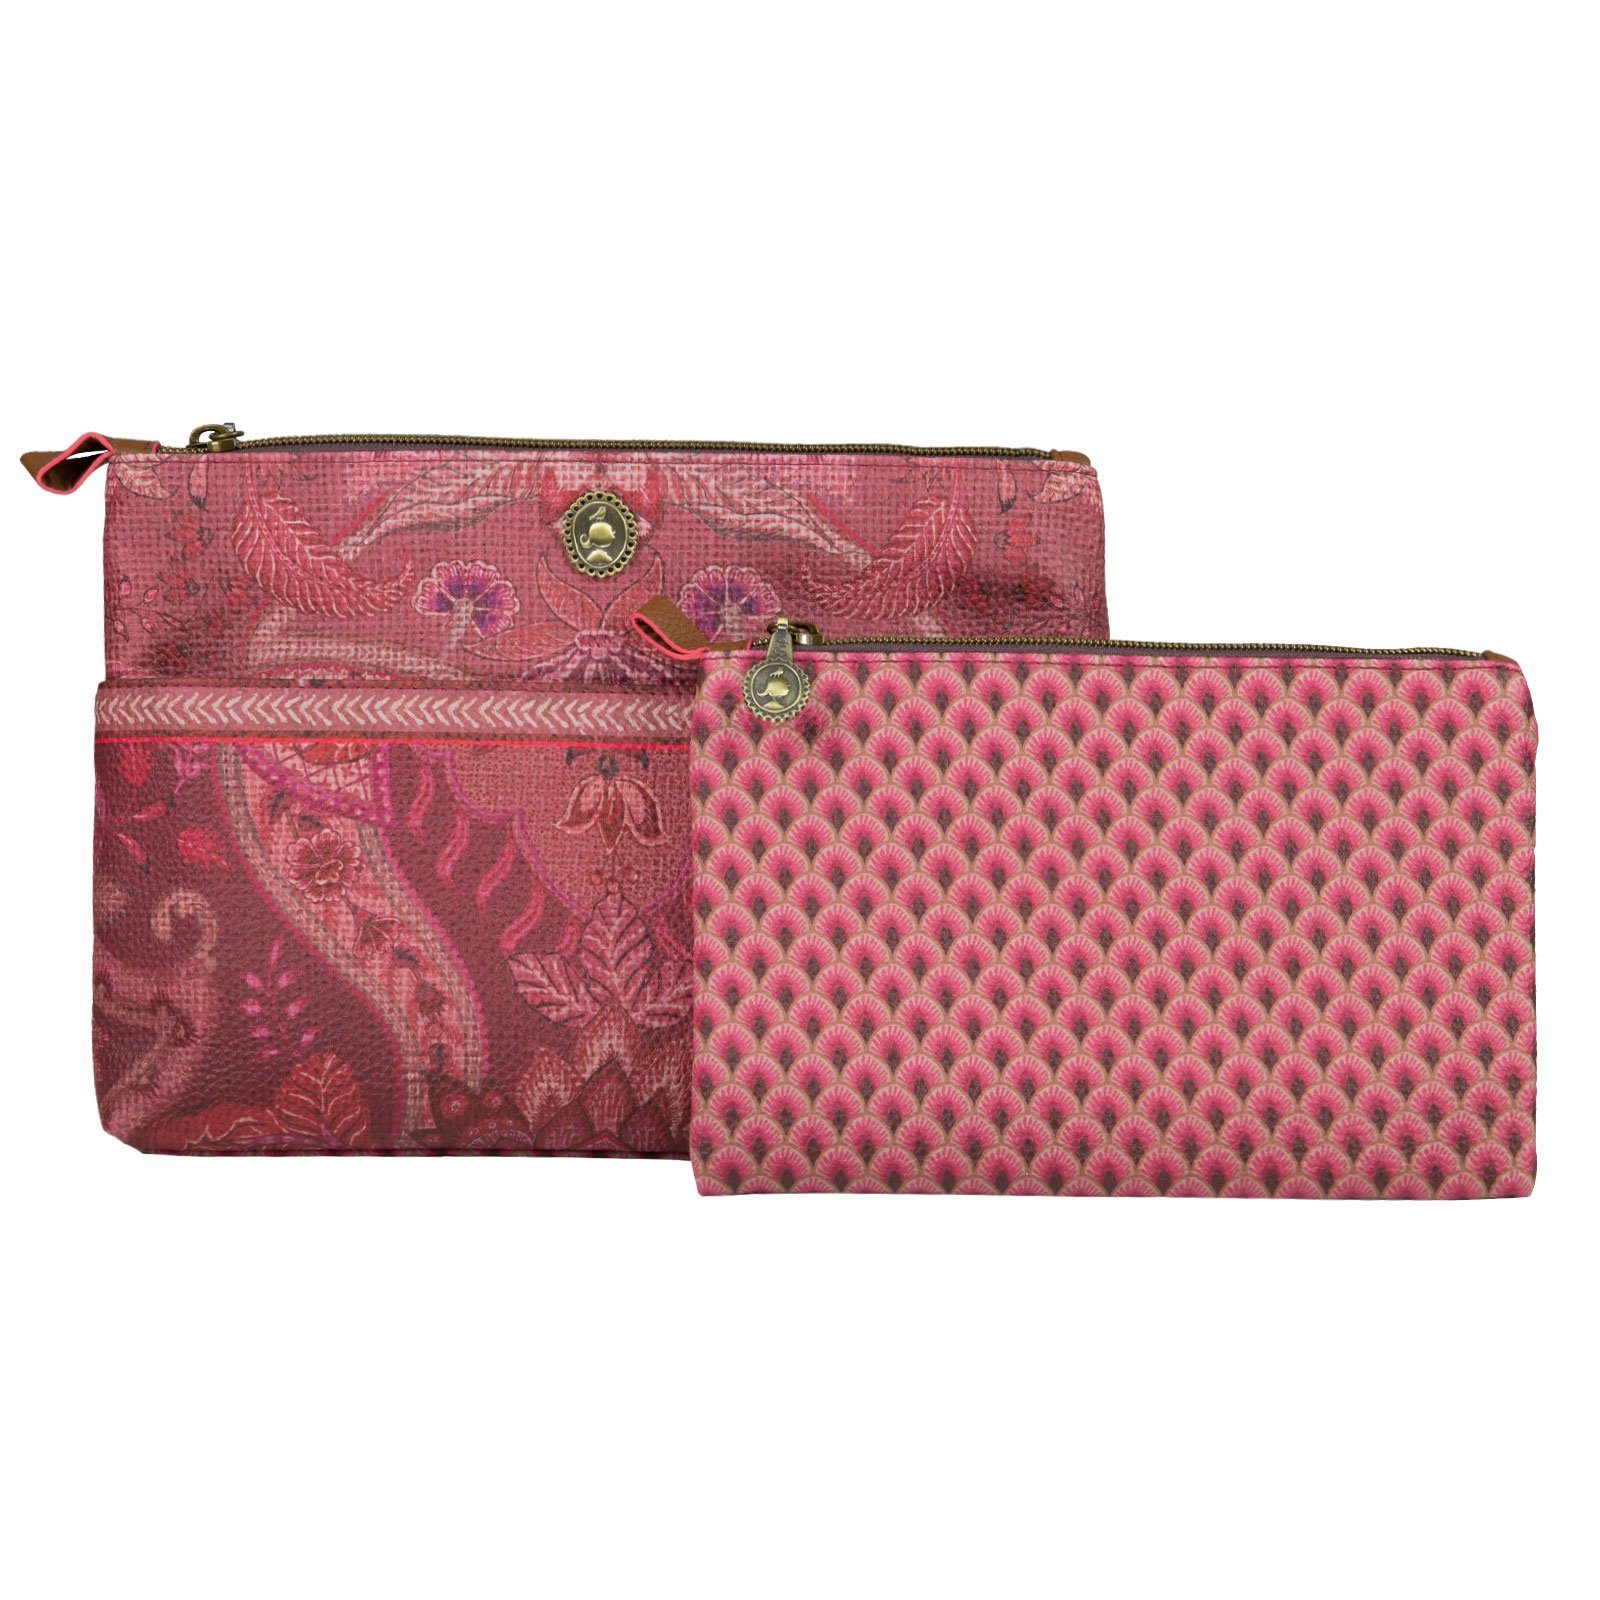 Kyoto Festival, Cosmetic Kosmetiktasche Combi Studio Bag mit PiP Extratasche dark pink kleiner